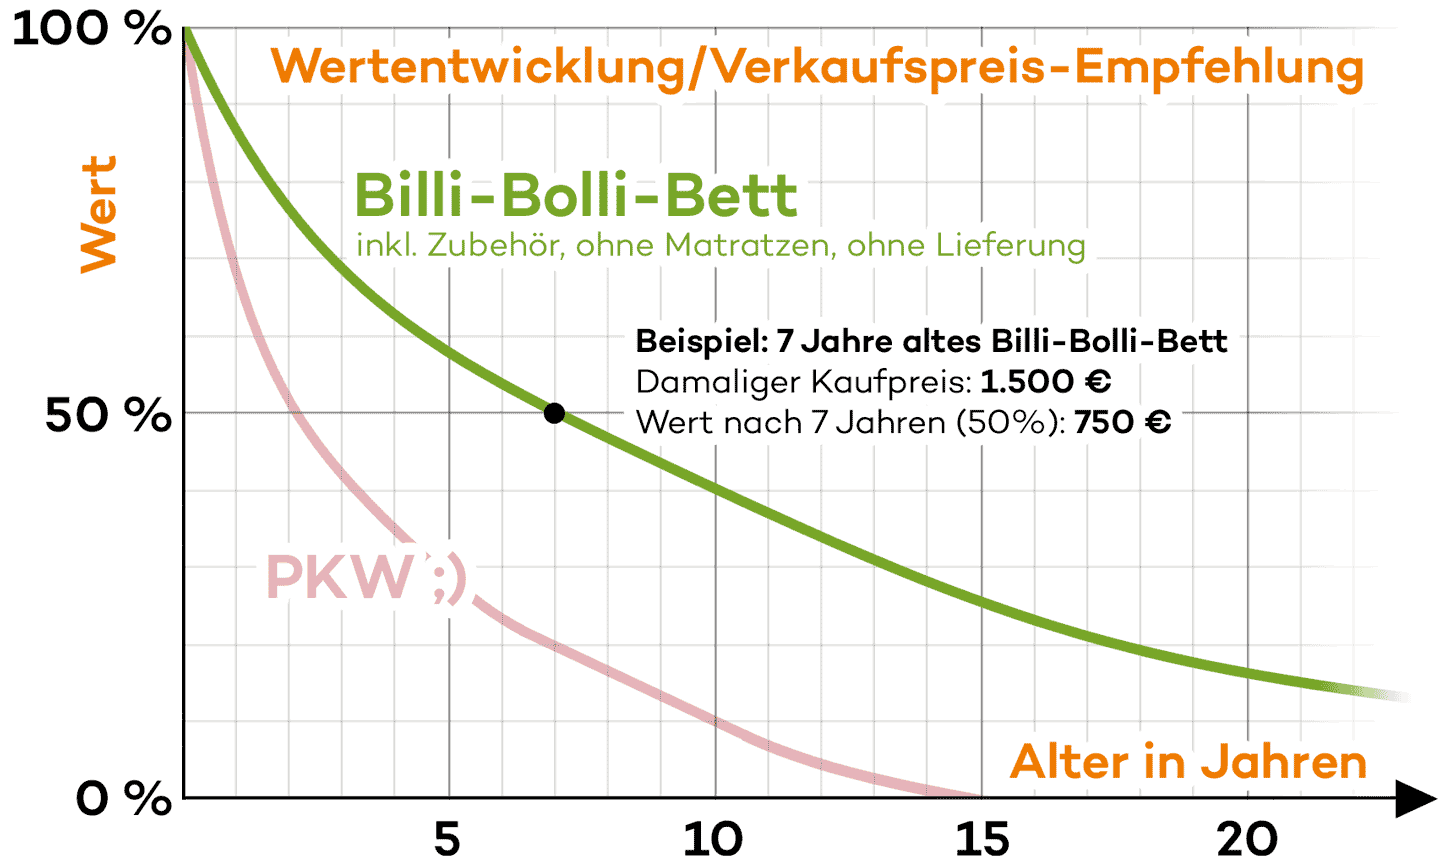 Wertentwicklung/Verkaufspreis-Empfehlung für Billi-Bolli-Betten